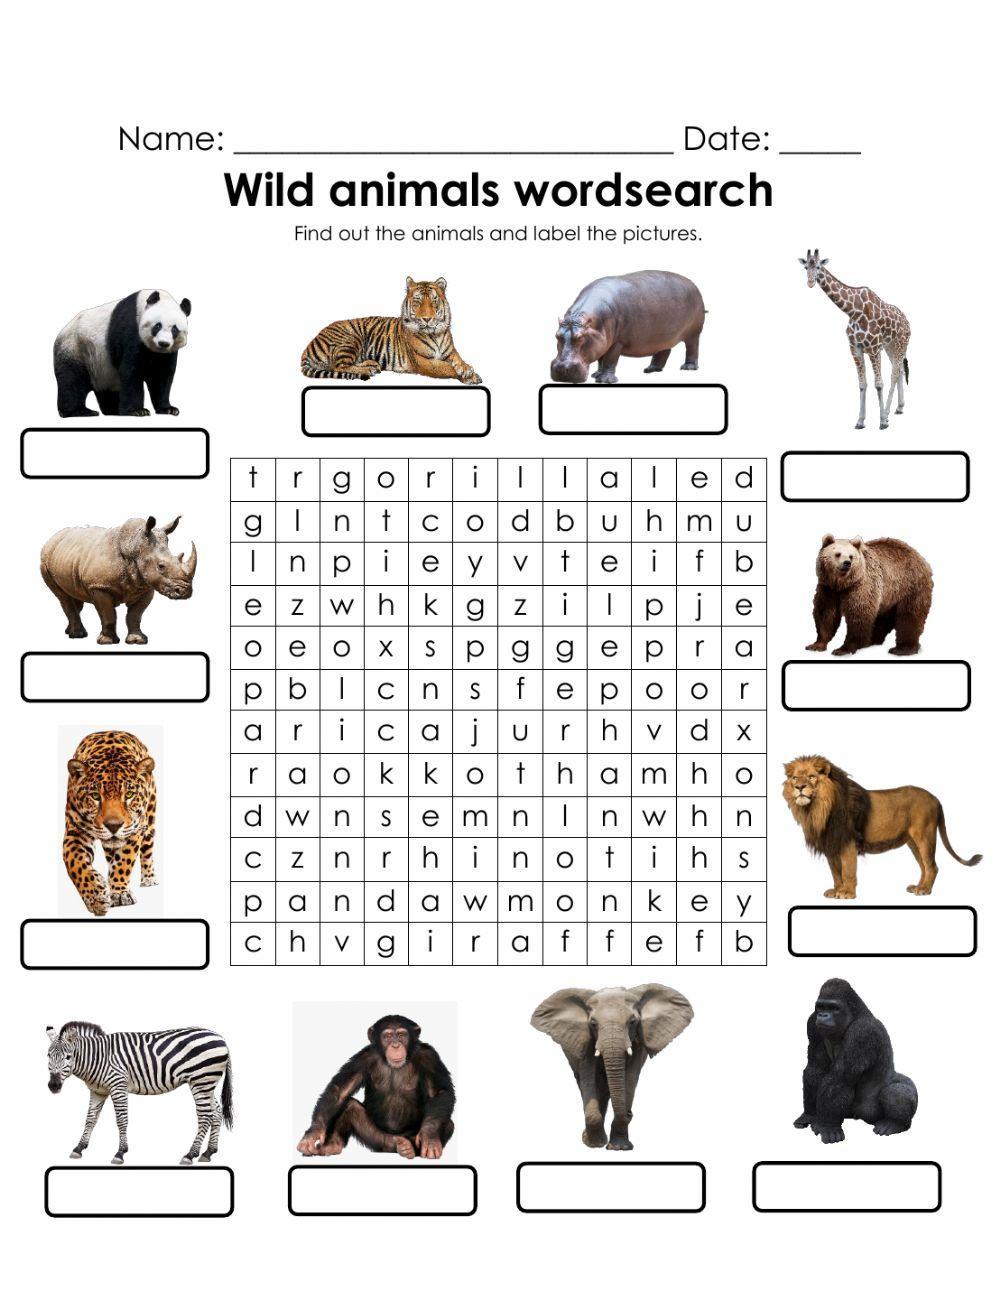 Wild animals wordsearch